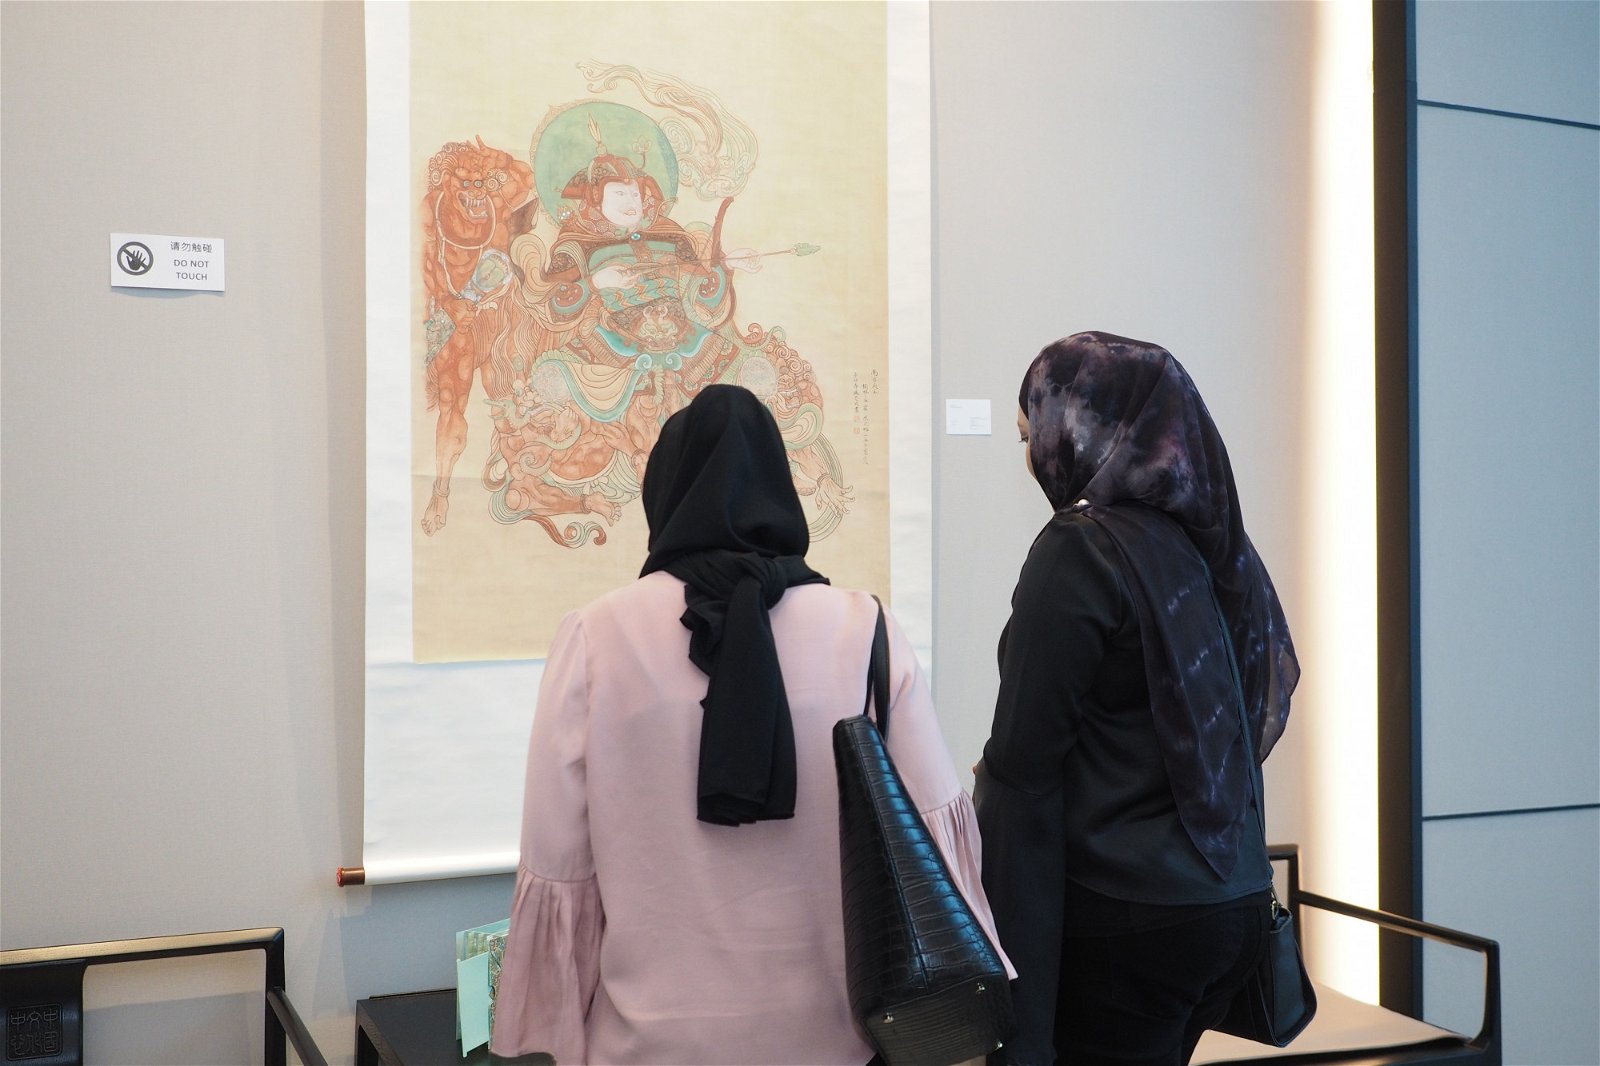 吉隆坡中国文化中心将不定期举办与中国文化有关的展览，免费开放参观，同时吸引国内各种族人士前来欣赏。